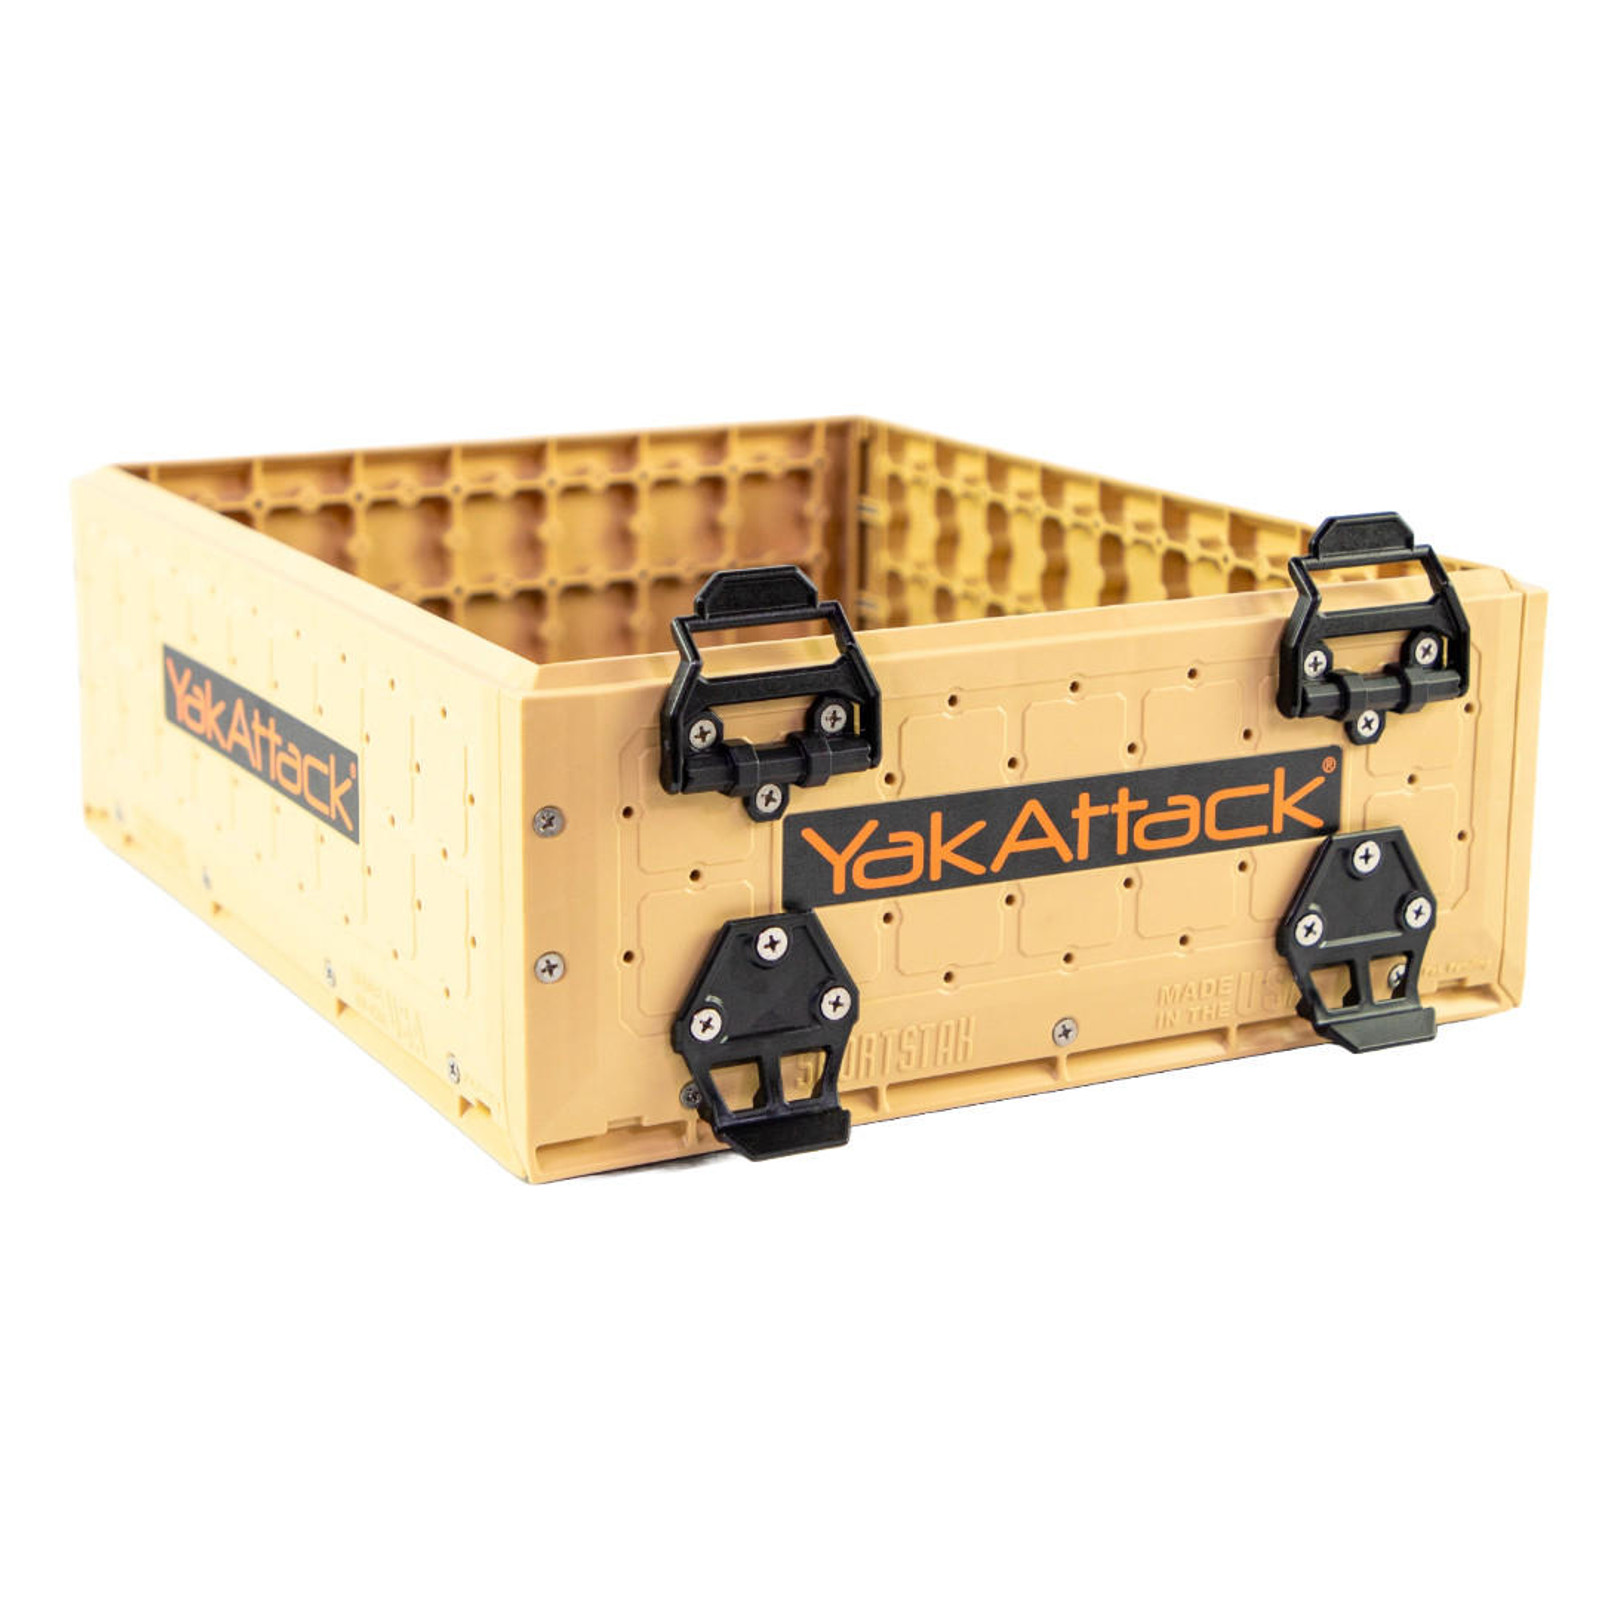  13x16 ShortStak Upgrade Kit for BlackPak Pro,  Desert Sand 